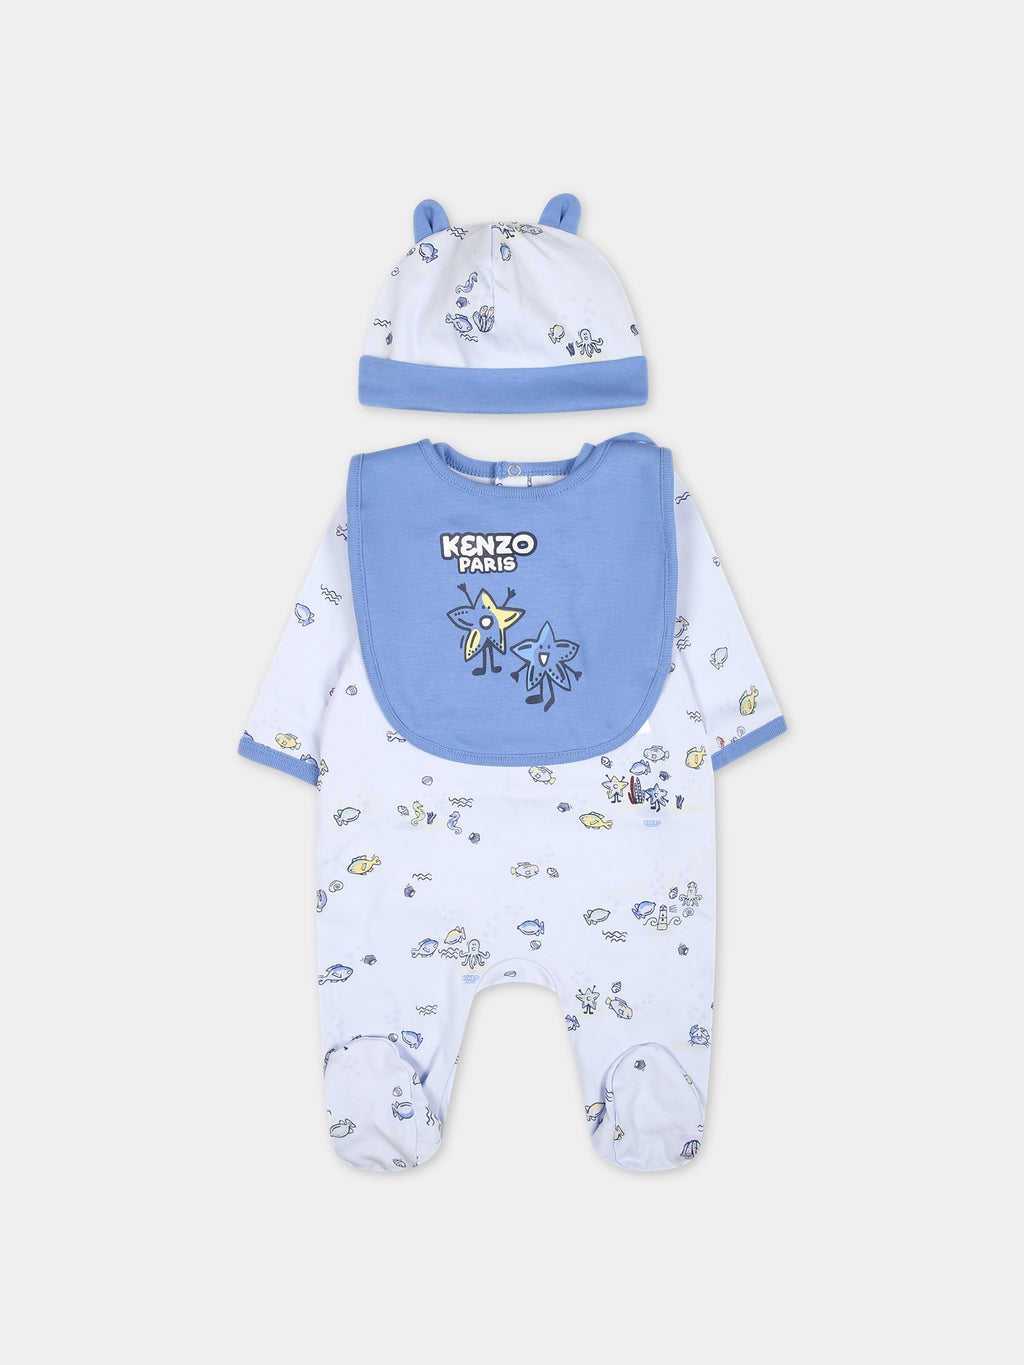 Ensemble bleu clair pour bébé avec imprimé et logo